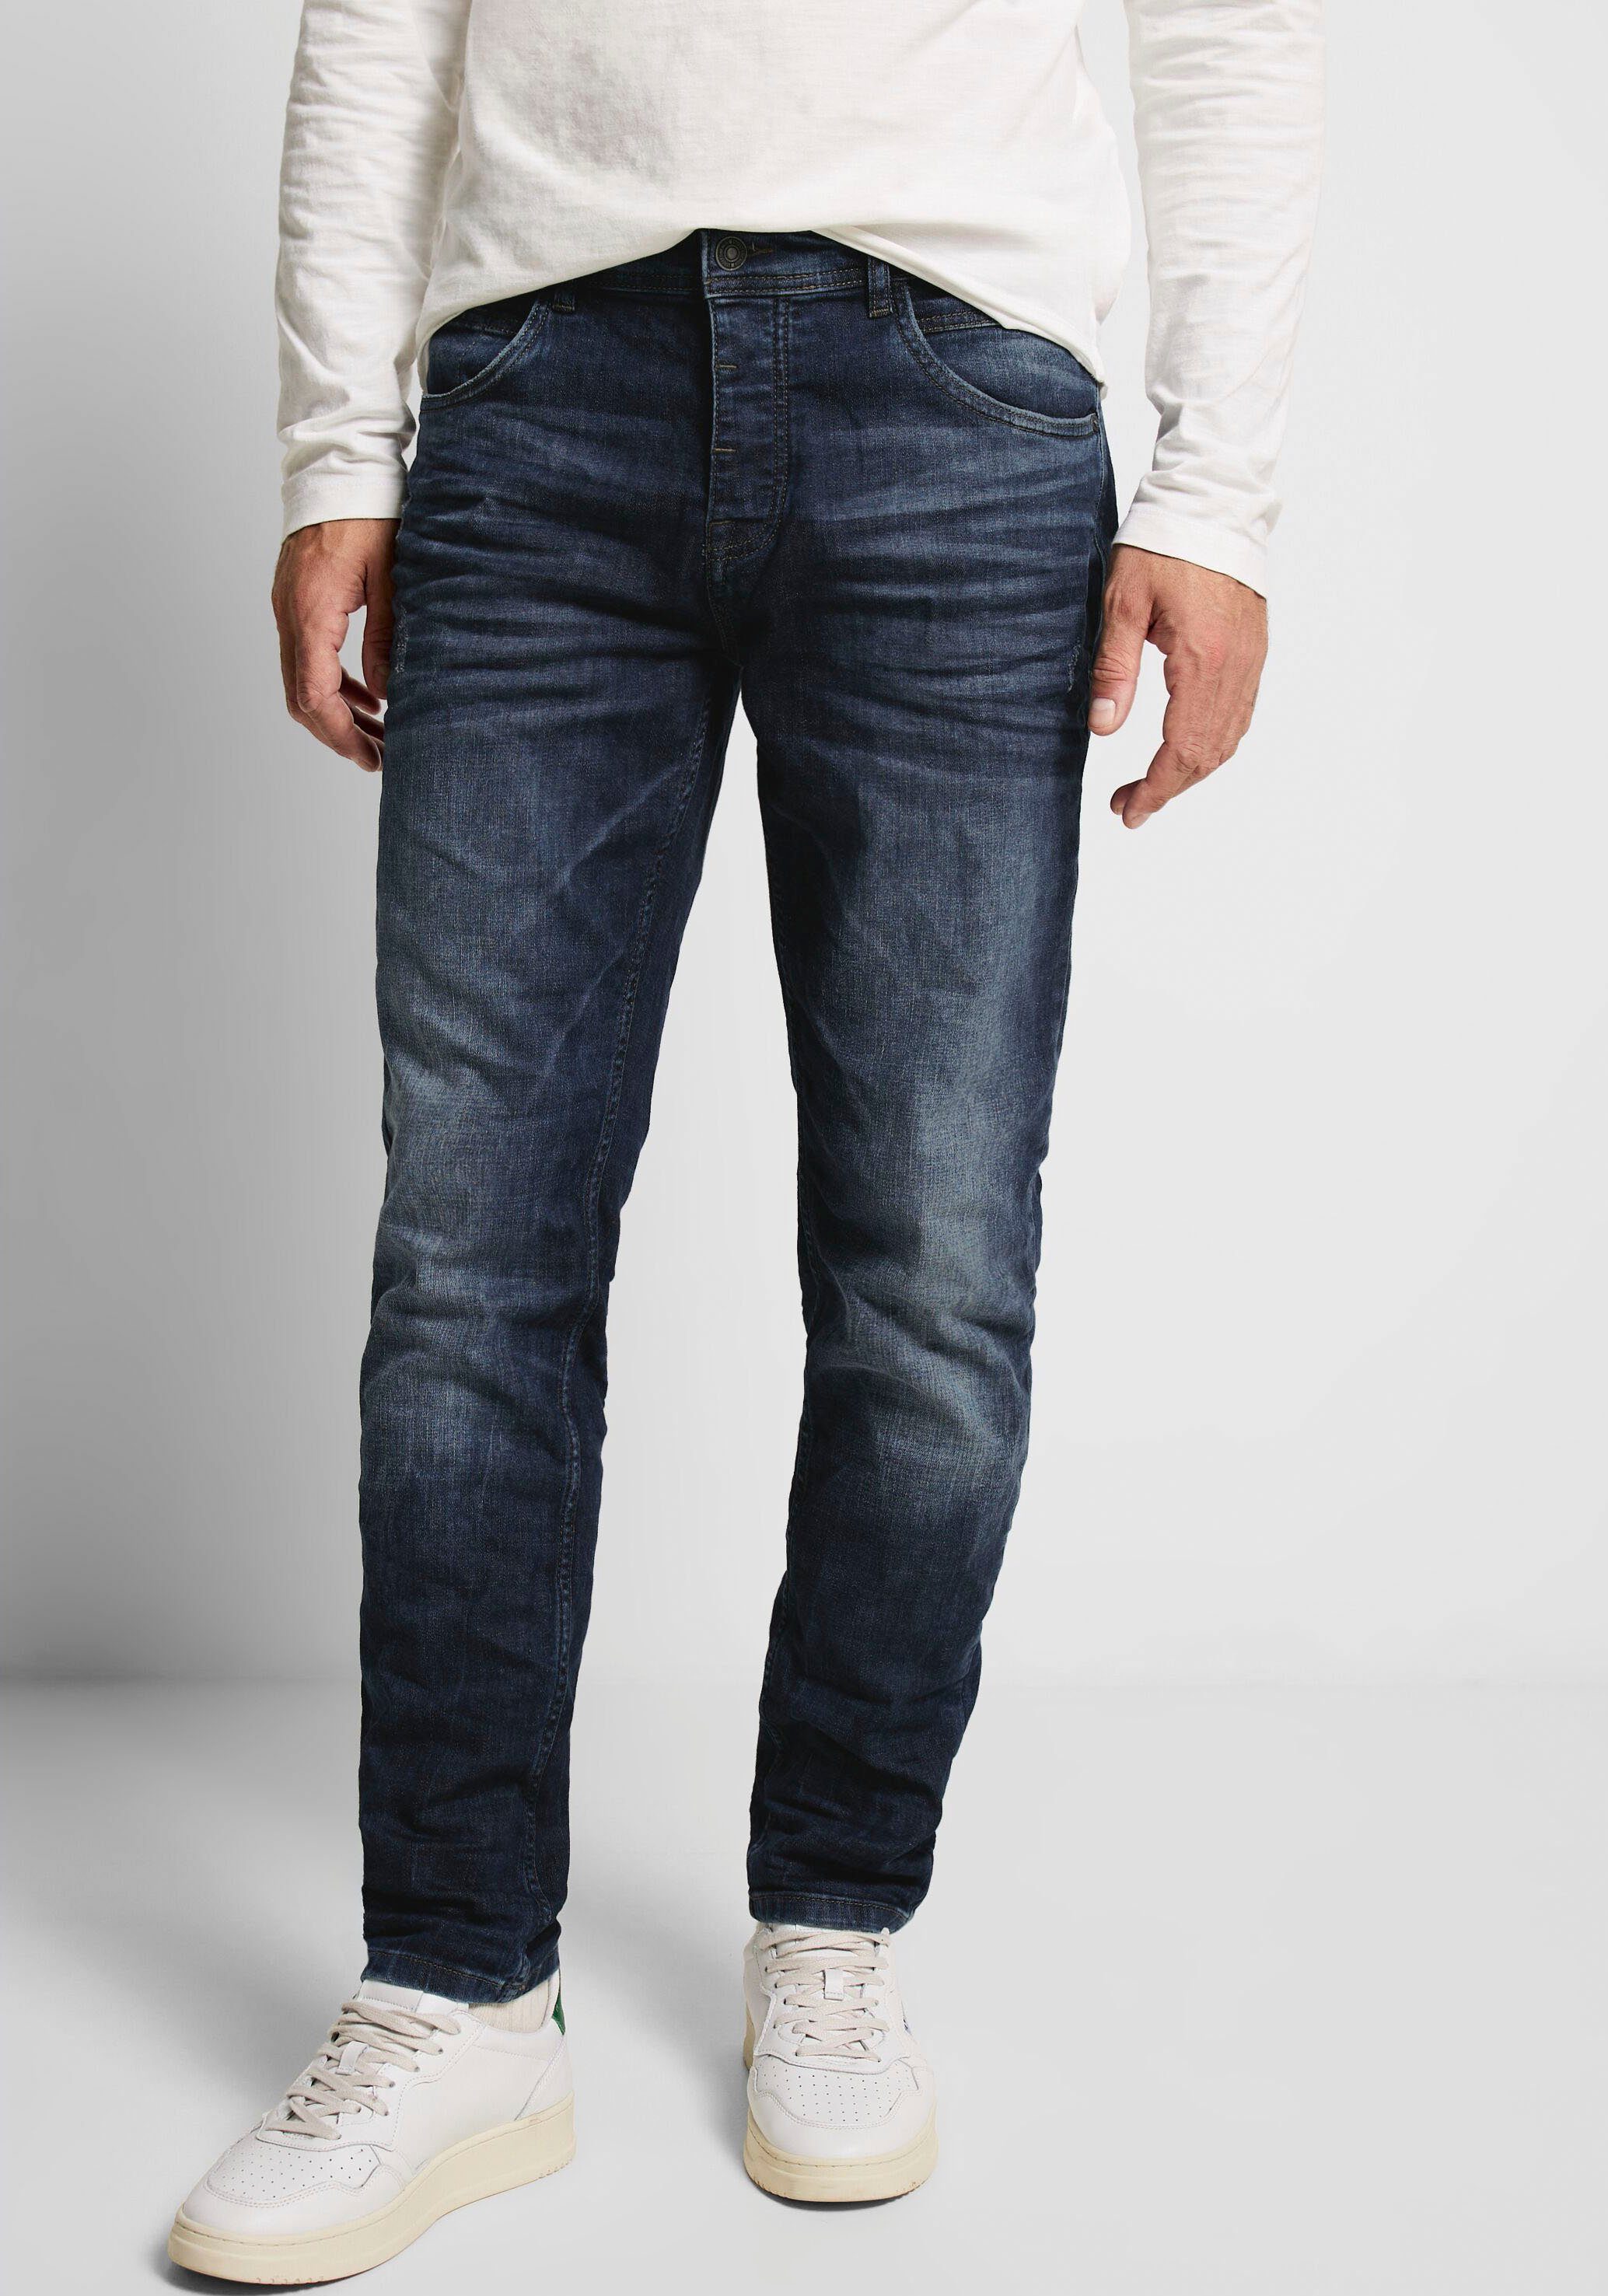 Herren Ankle-Jeans kaufen » Herren Knöchelfreie Jeans | OTTO